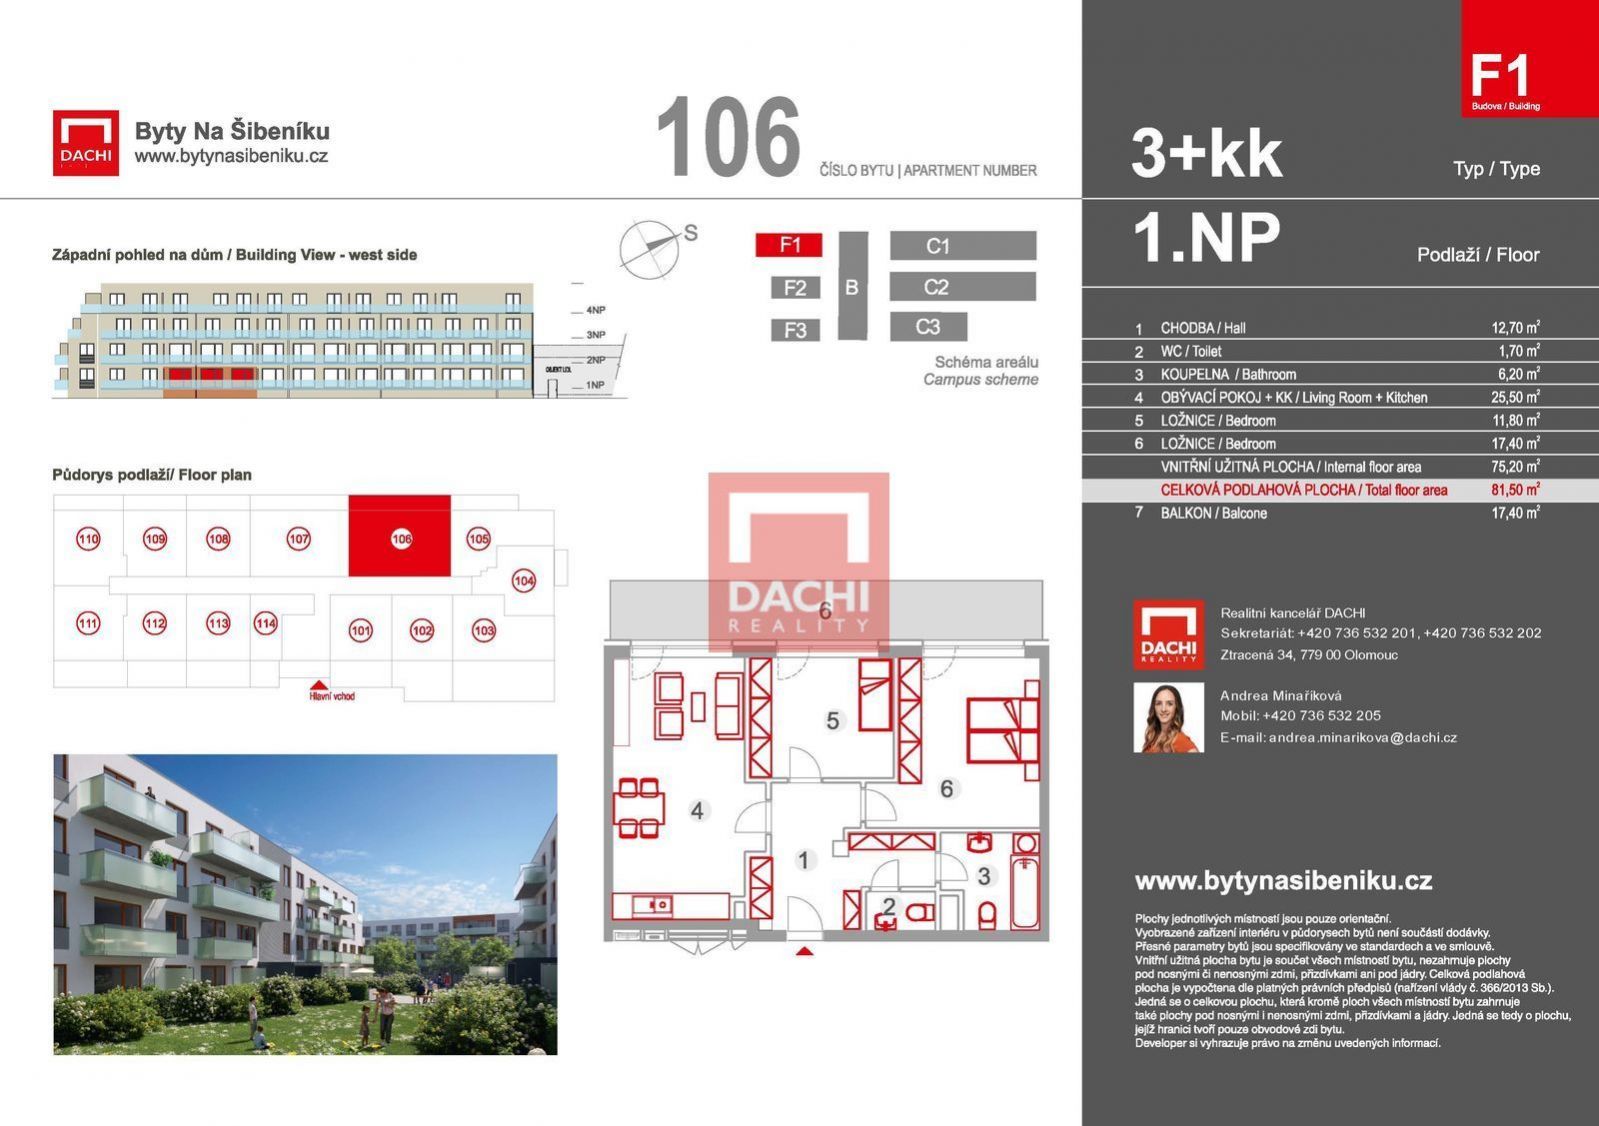 Prodej novostavby bytu F1.106  3+kk  81,50m s balkonem 17,4m, Olomouc, Byty Na Šibeníku II.etapa, obrázek č. 3